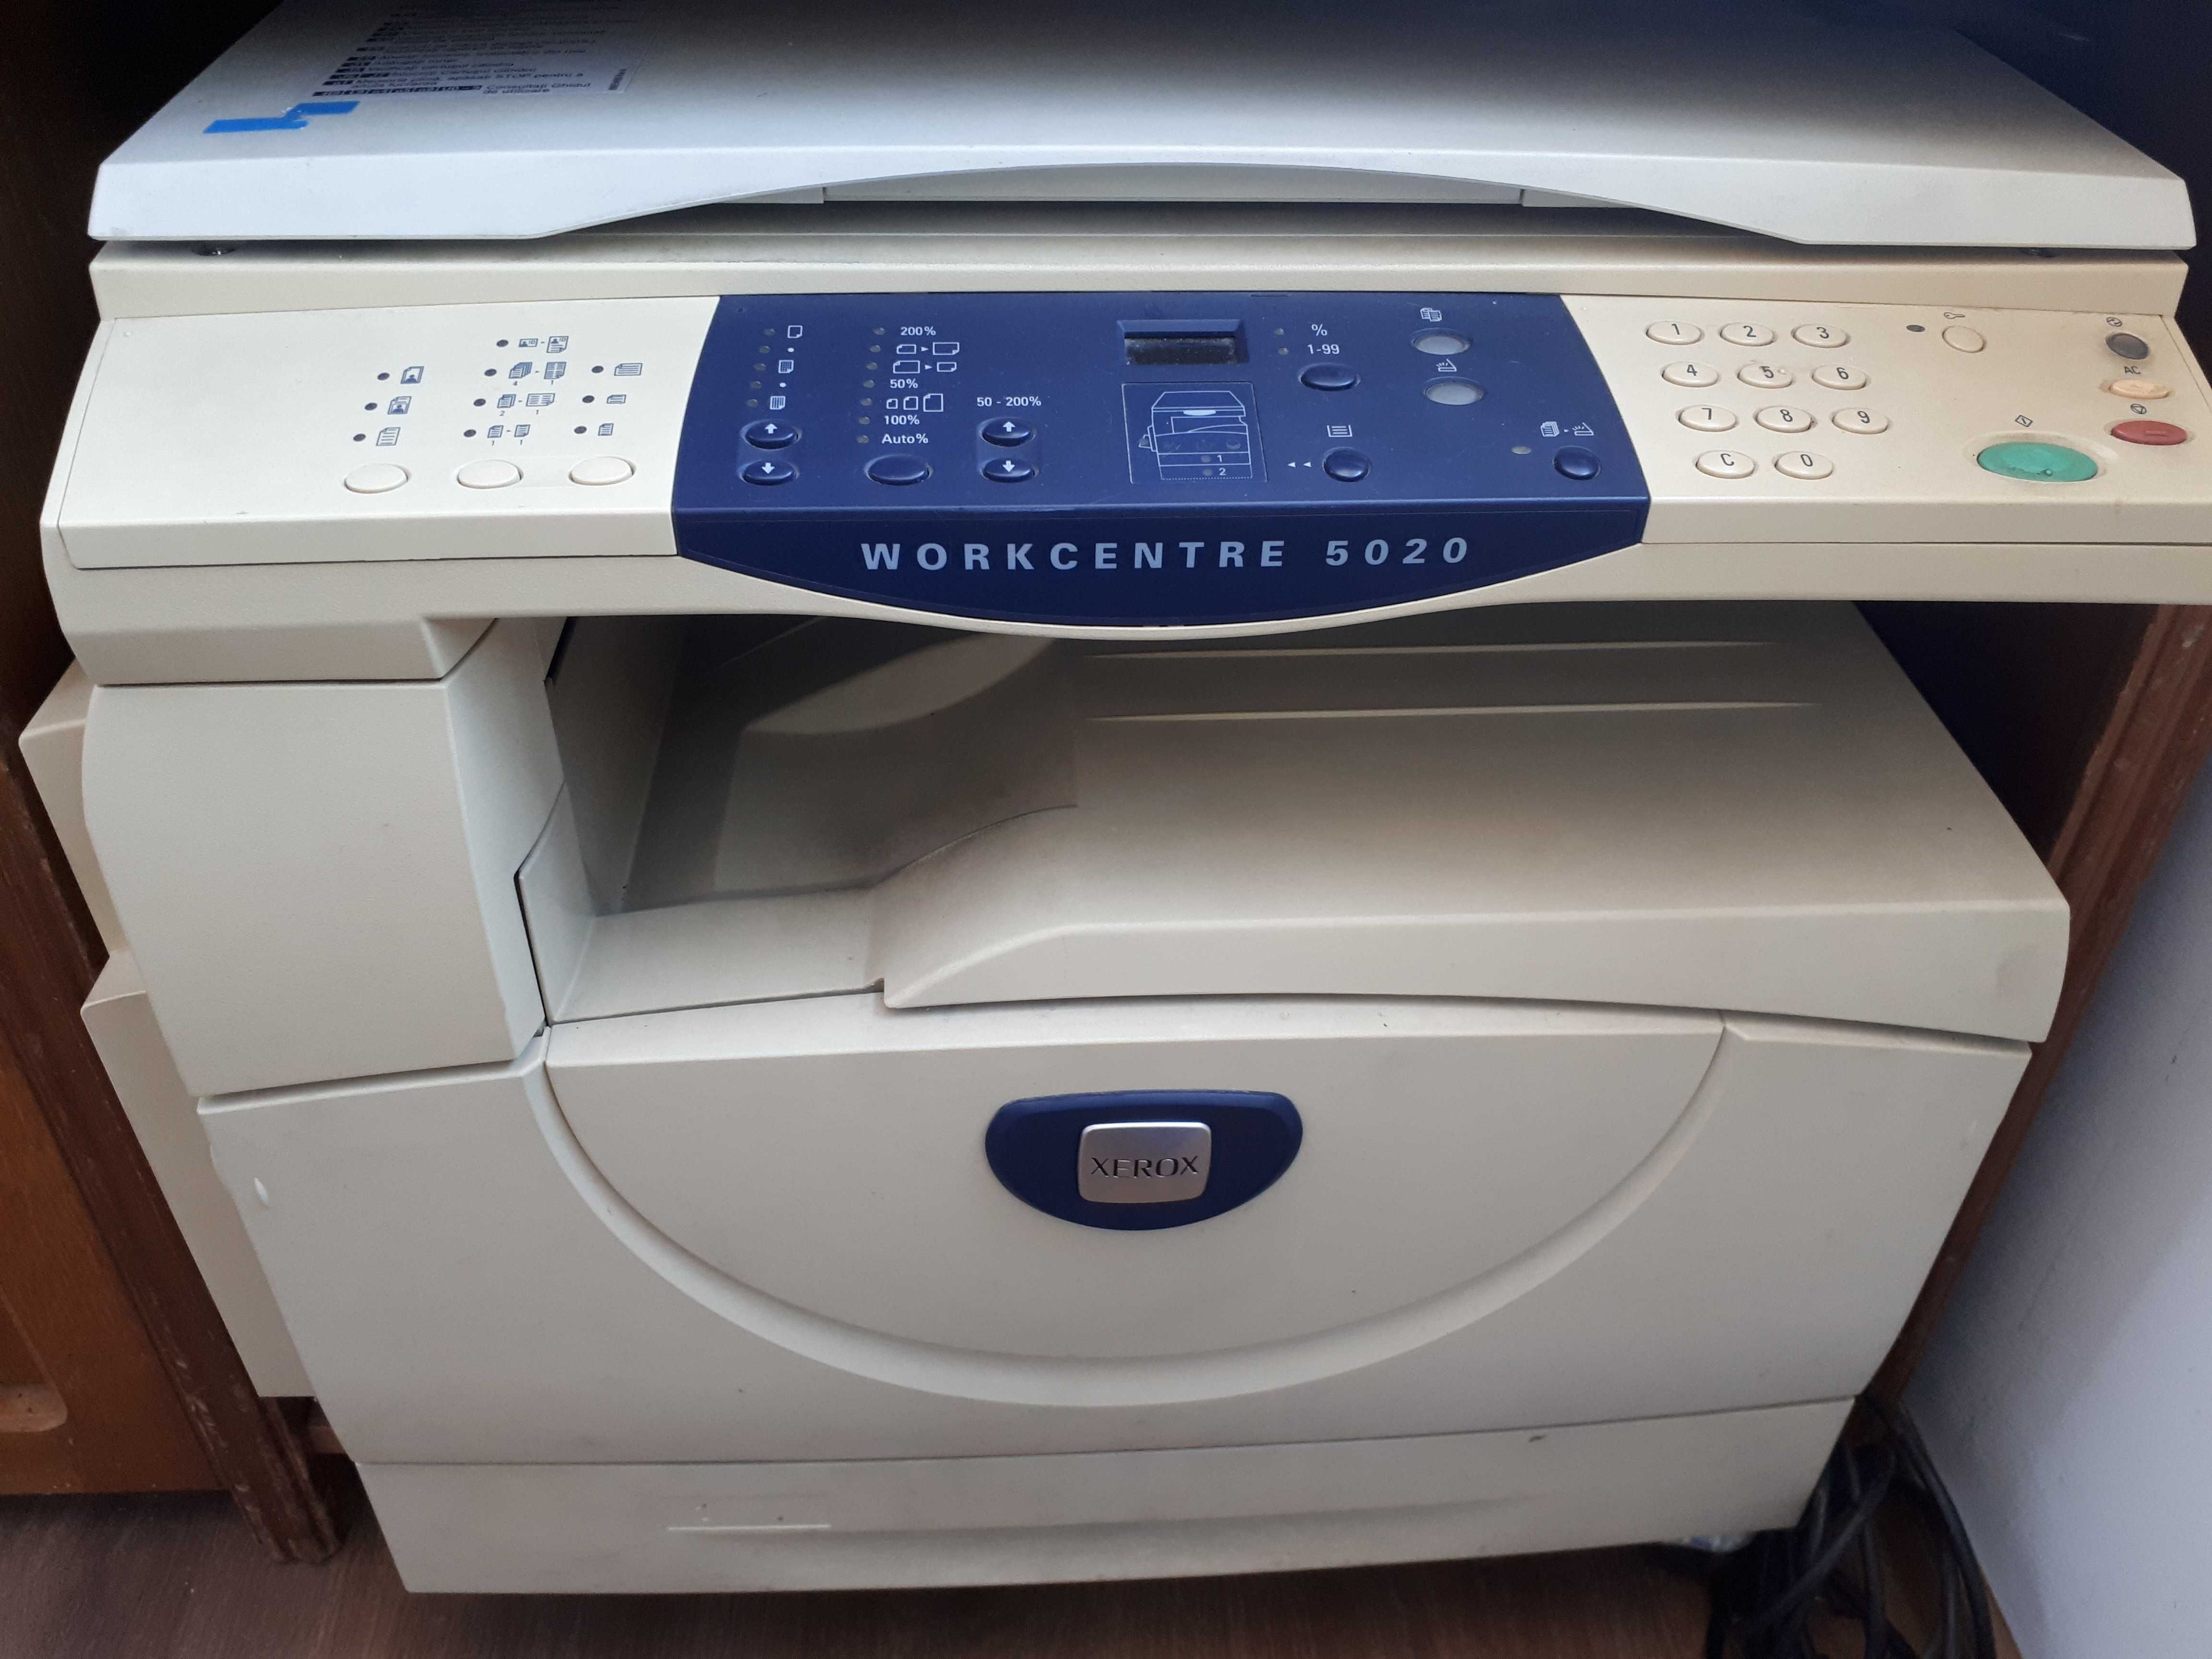 Multifunctionala imprimanta, copiator, scanner Xerox WorkCentre 5020